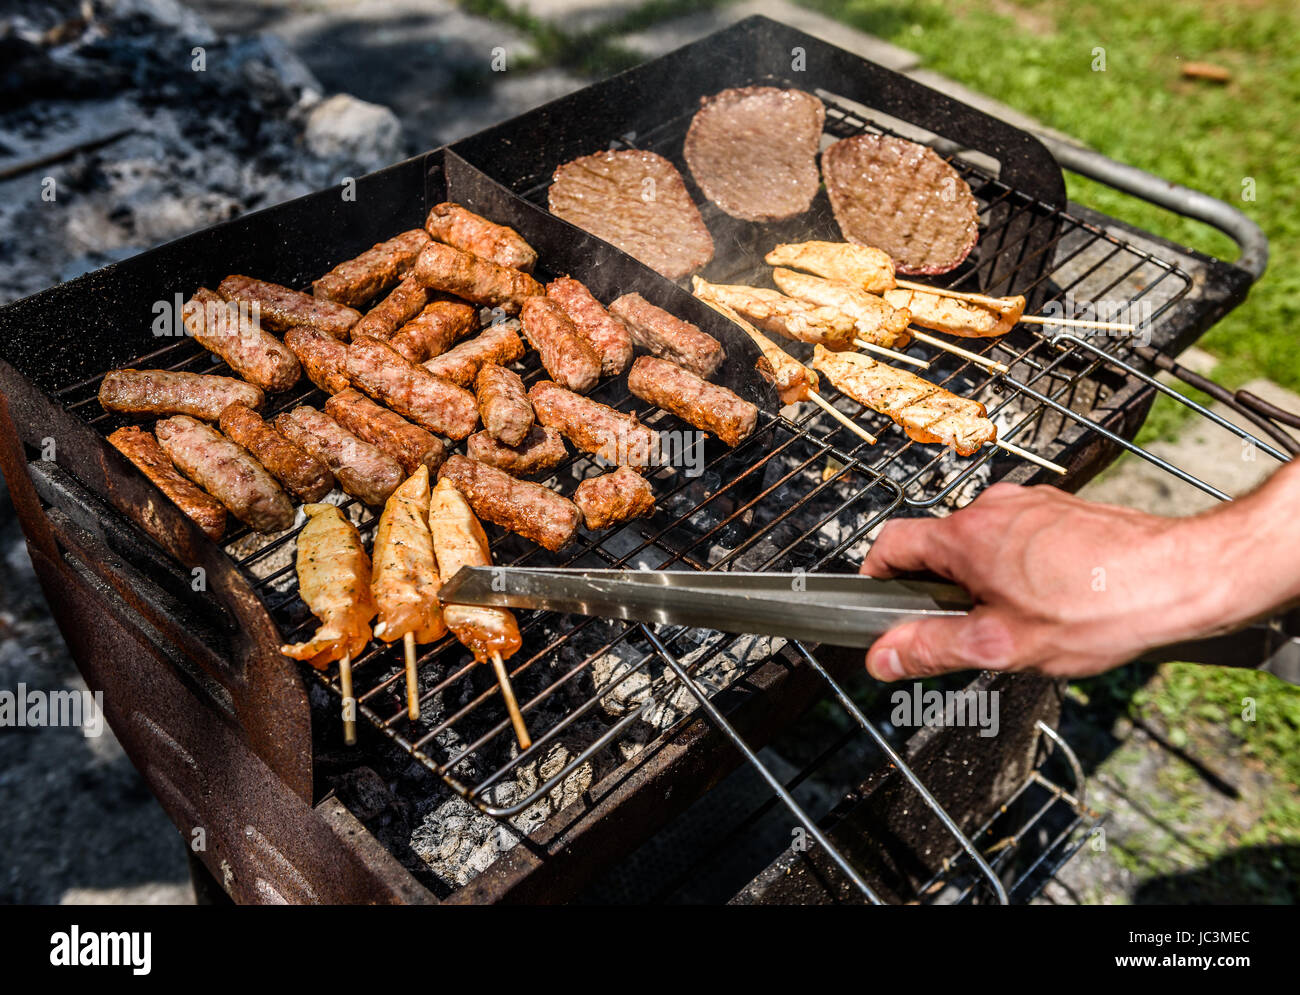 Köstliche Fleisch auf Grill mit Kohle im freien Picknick. Grillen von  Lebensmitteln auf Garten oder eine Terrasse alte kleine billige BBQ-Grill  zu Hause Stockfotografie - Alamy